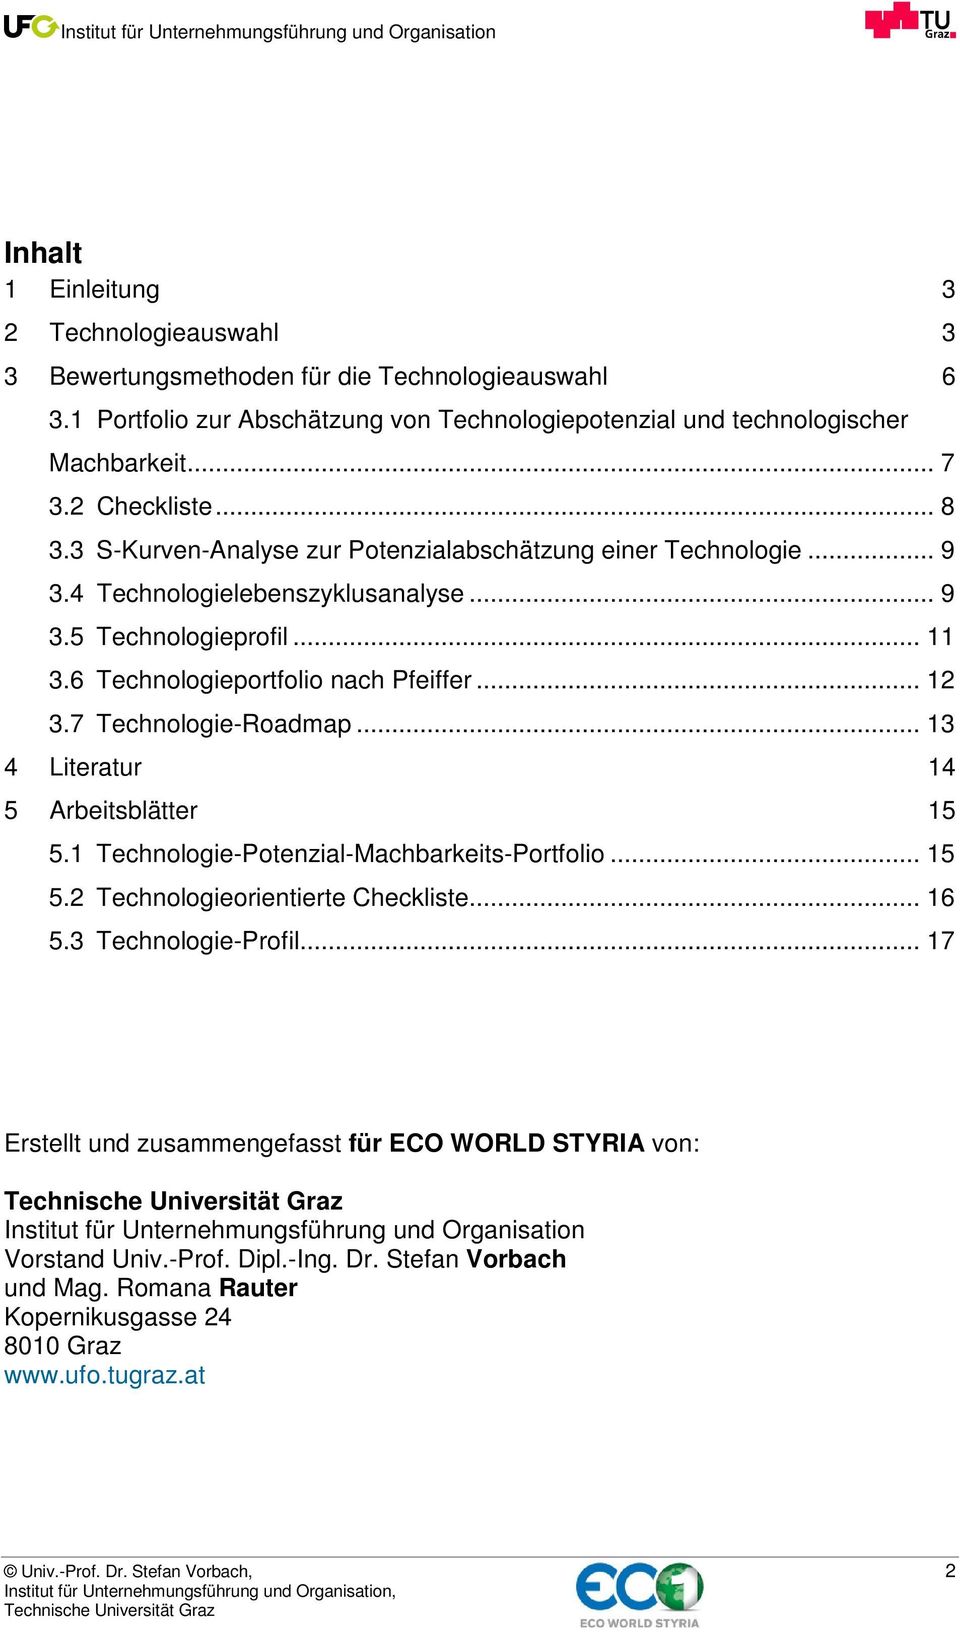 7 Technologie-Roadmap... 13 4 Literatur 14 5 Arbeitsblätter 15 5.1 Technologie-Potenzial-Machbarkeits-Portfolio... 15 5.2 Technologieorientierte Checkliste... 16 5.3 Technologie-Profil.